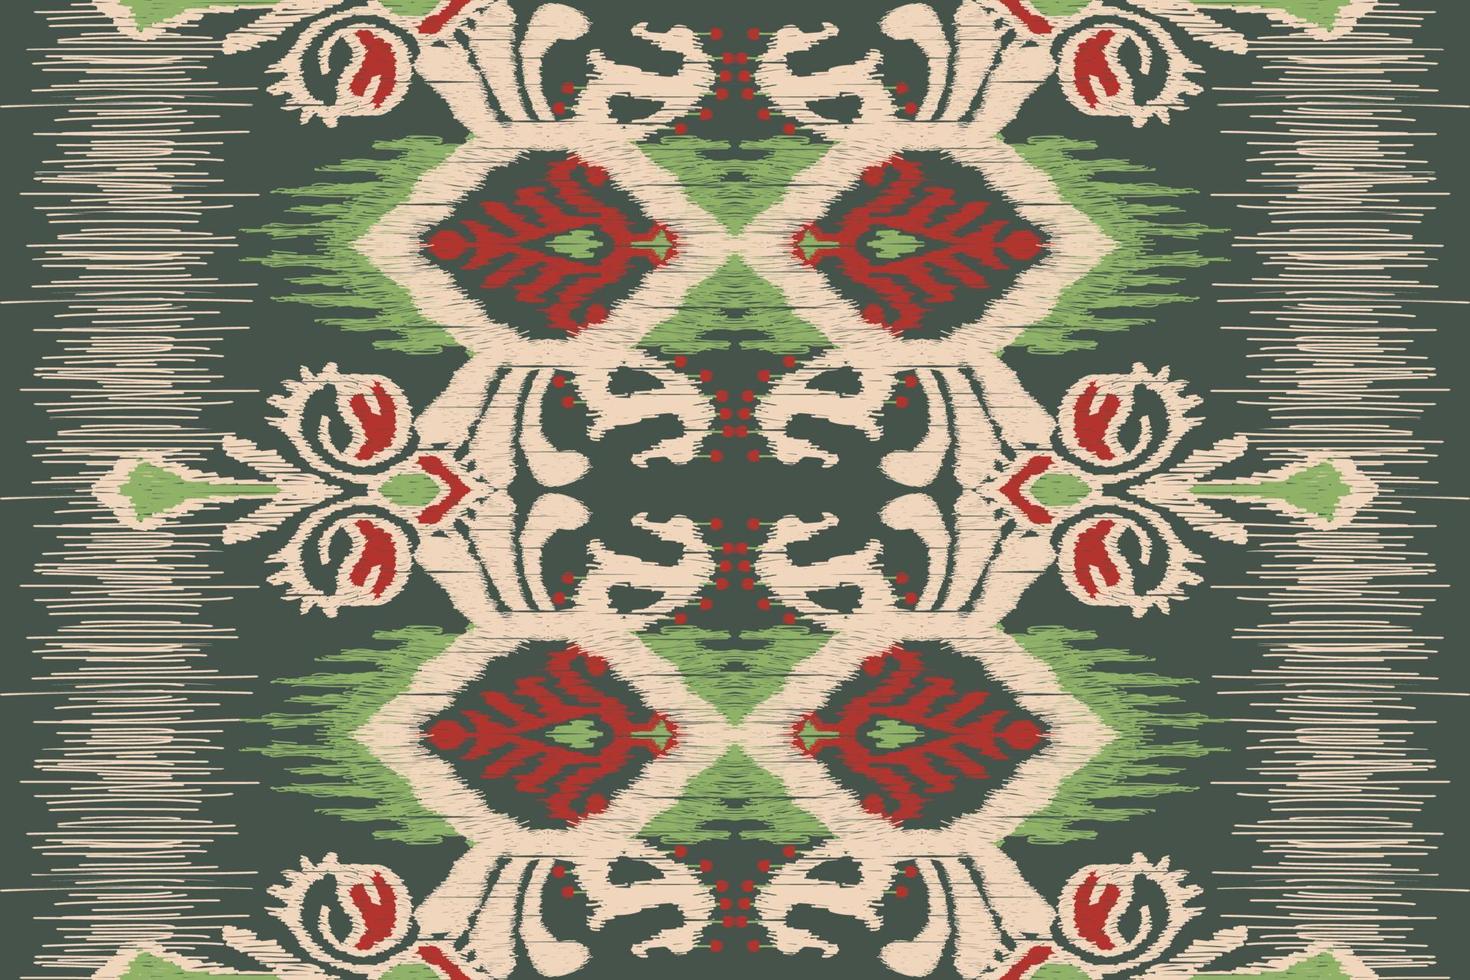 broderie cachemire florale ikat sur fond vert. motif géométrique oriental ethnique traditionnel. illustration vectorielle abstraite de style aztèque. conception pour la texture, le tissu, les vêtements, l'emballage, le tapis vecteur